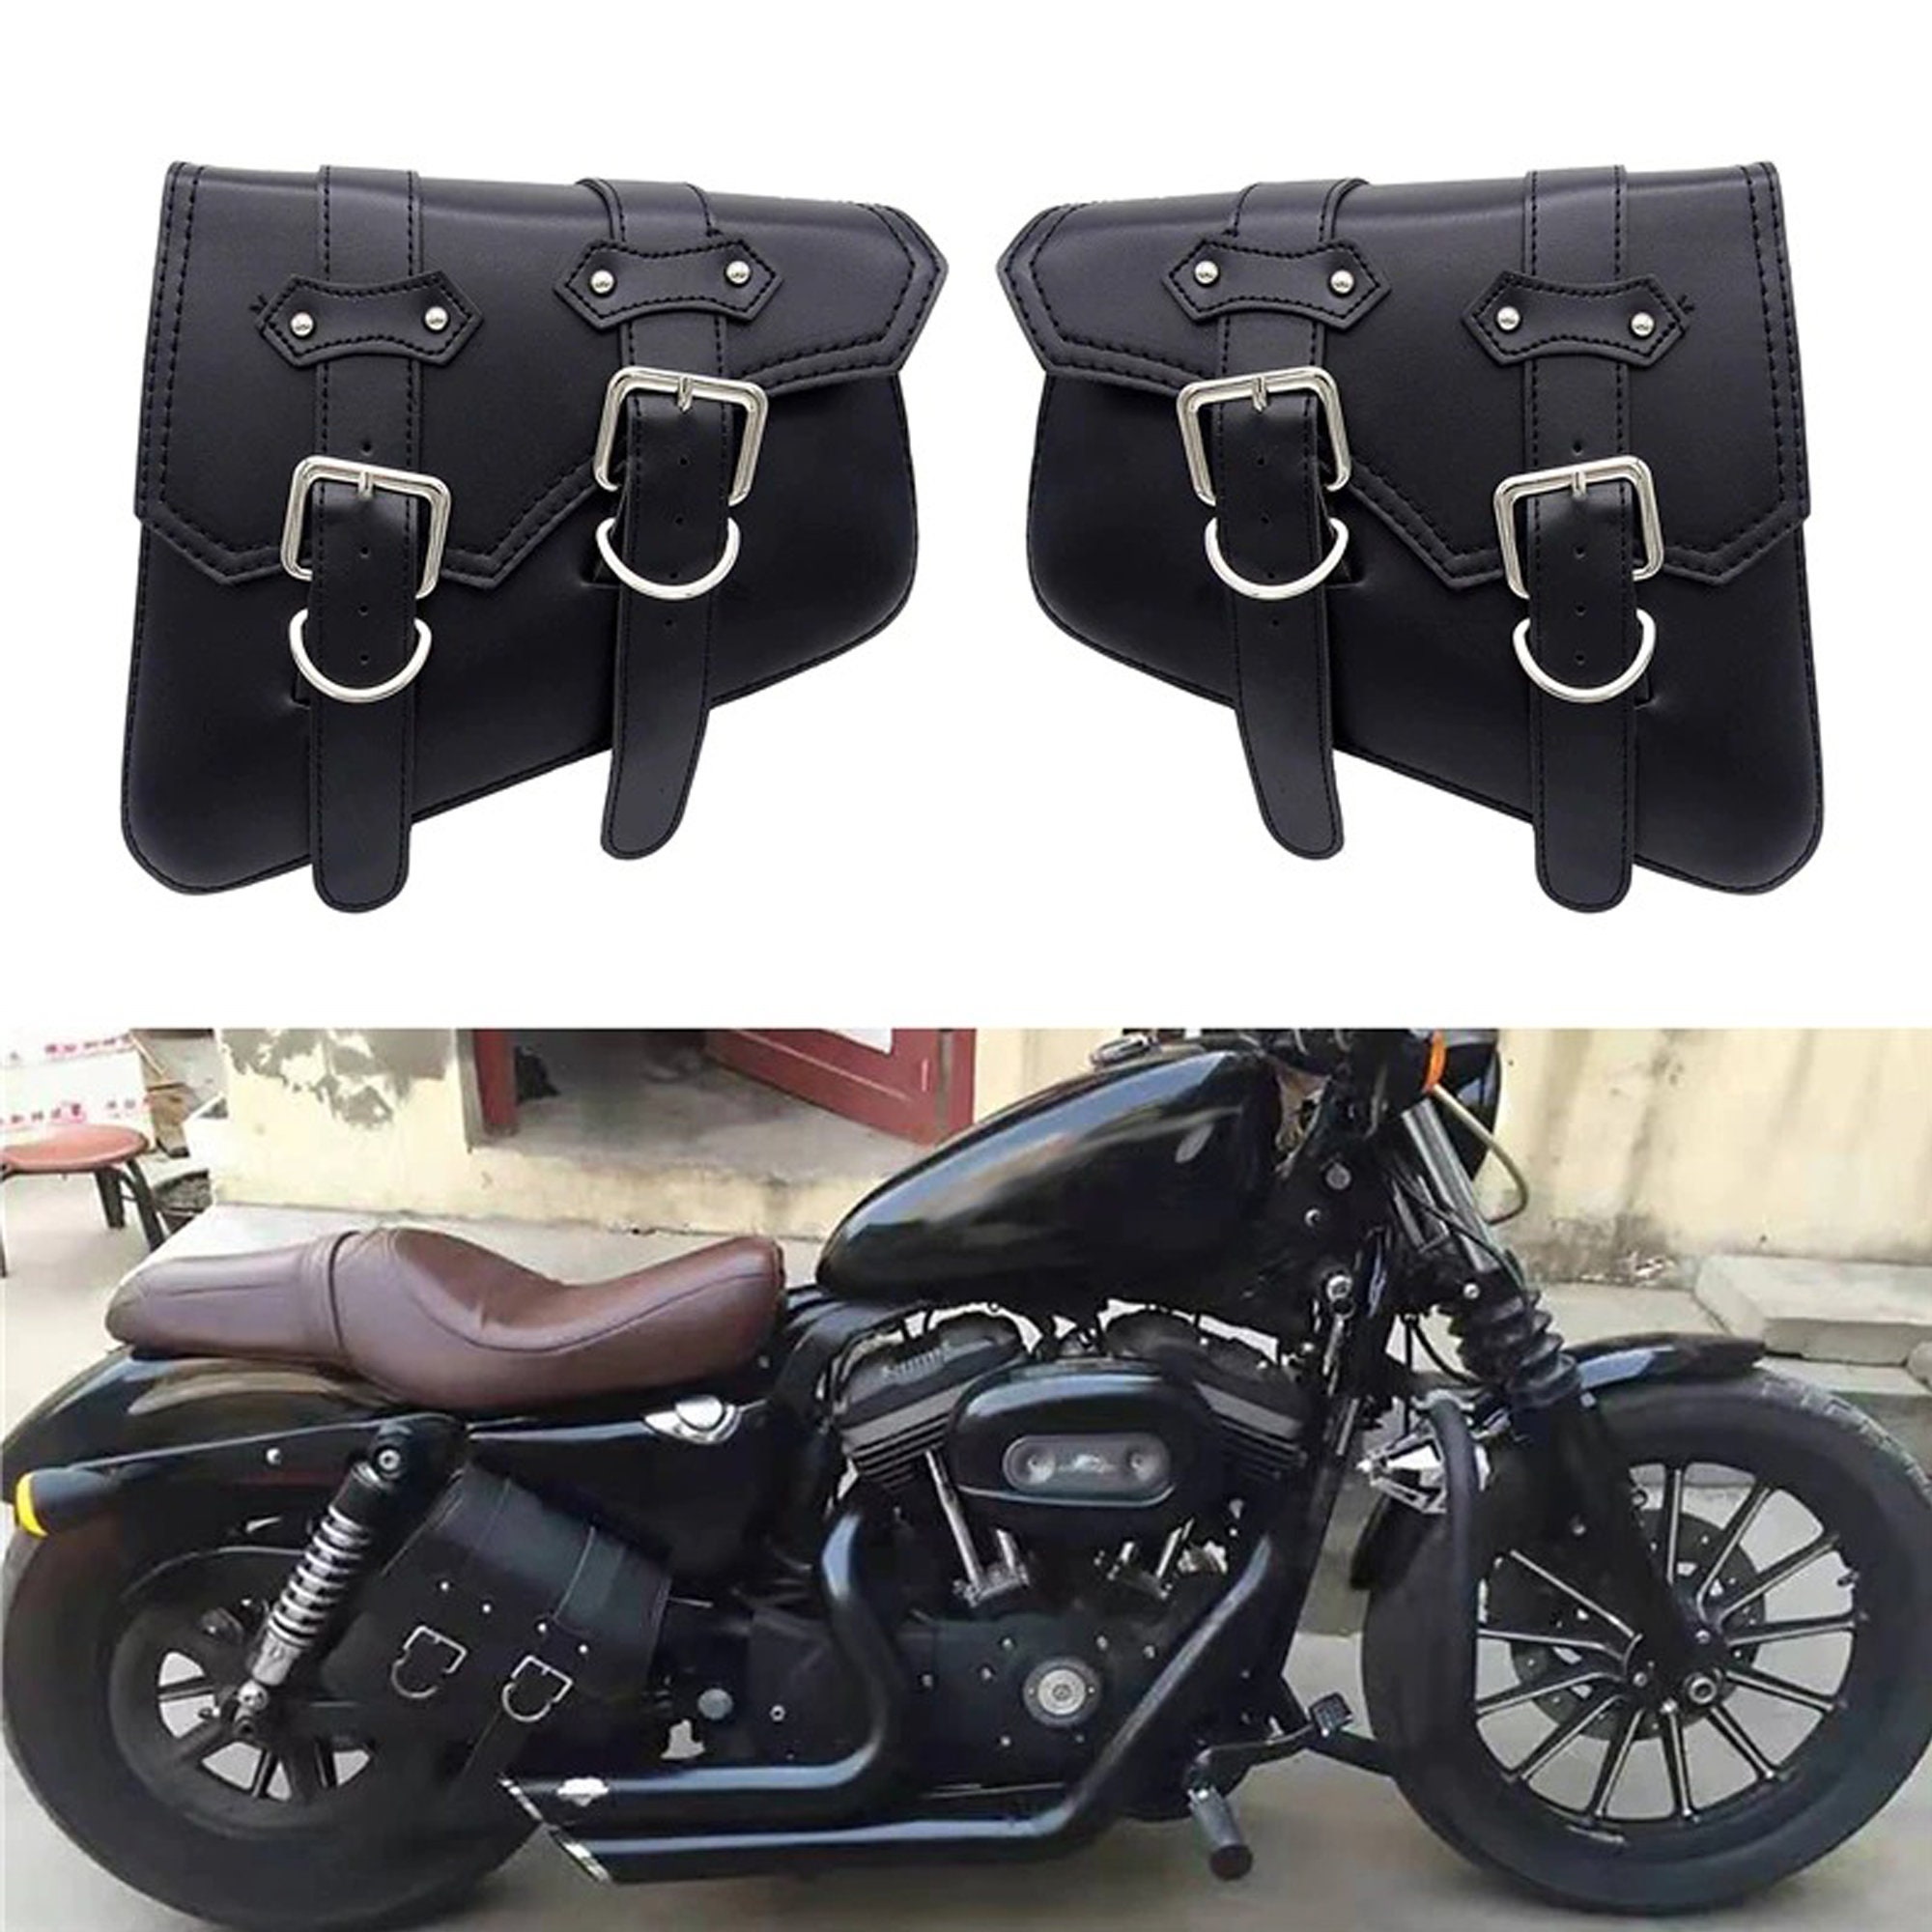 Apollo Black von ORLETANOS kompatibel mit Harley Davidson Satteltaschen Seitenkoffer Ledertaschen Saddlebags Echtleder schwarz Set Links und rechts 